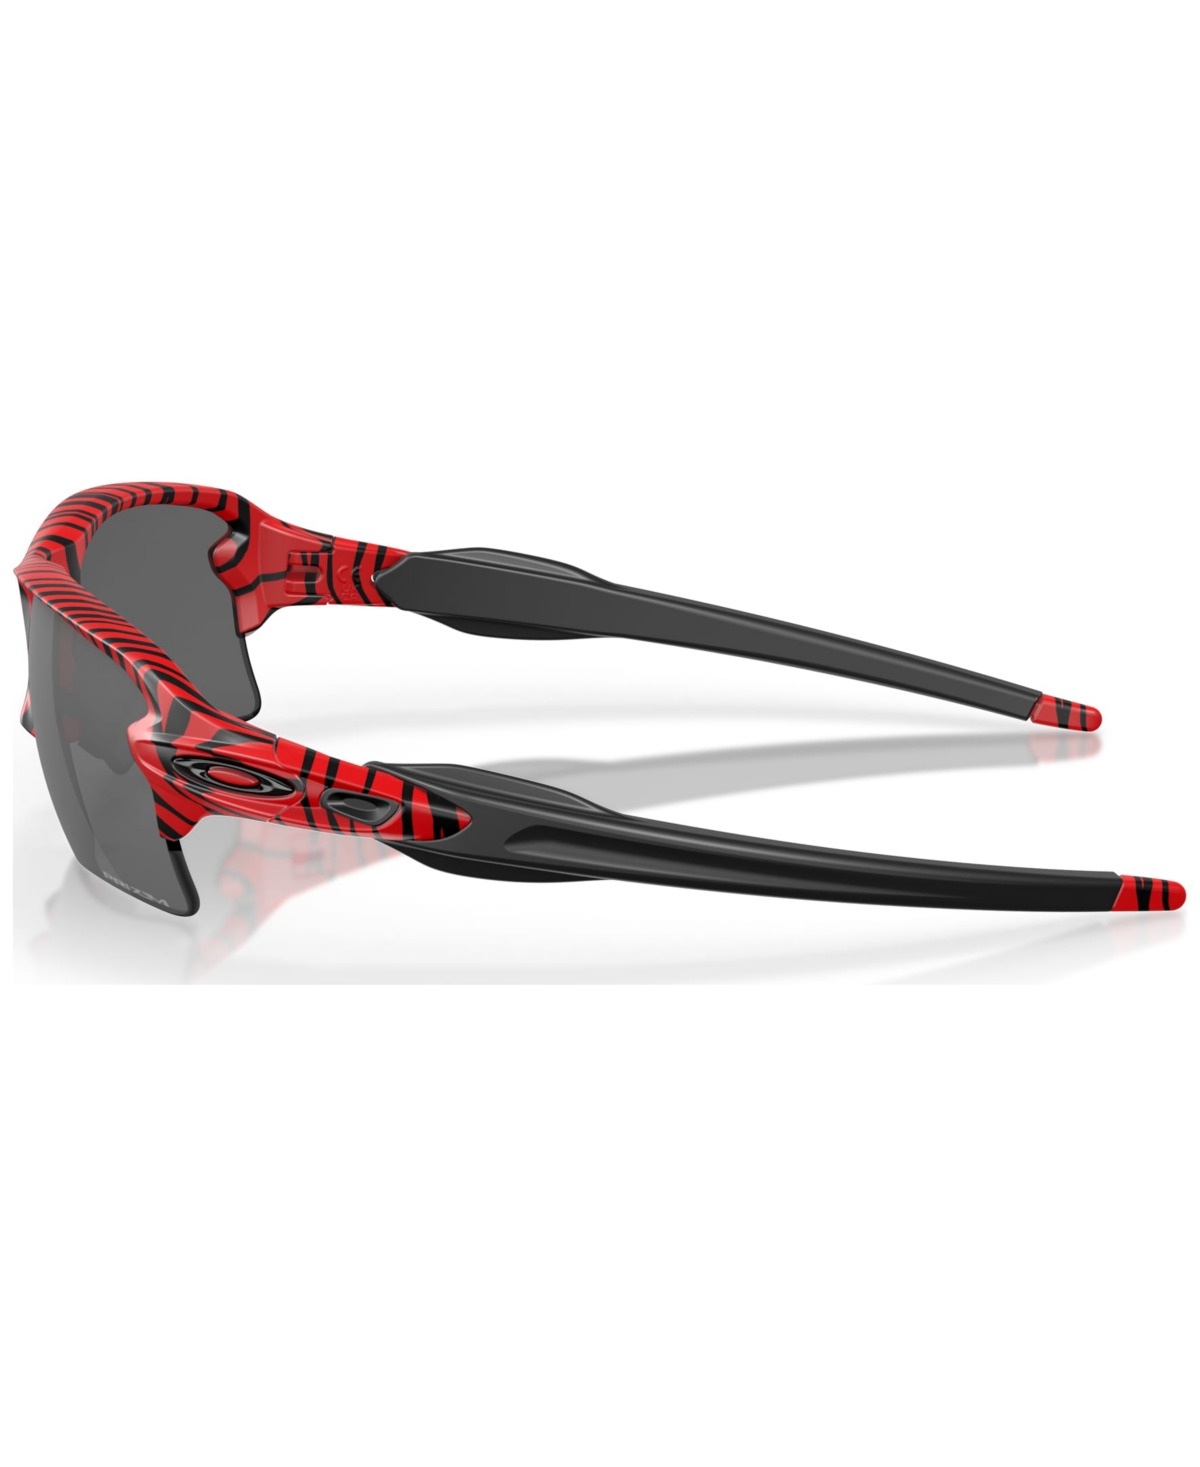 Shop Oakley Men's Sunglasses, Flak 2.0 Xl Red Tiger